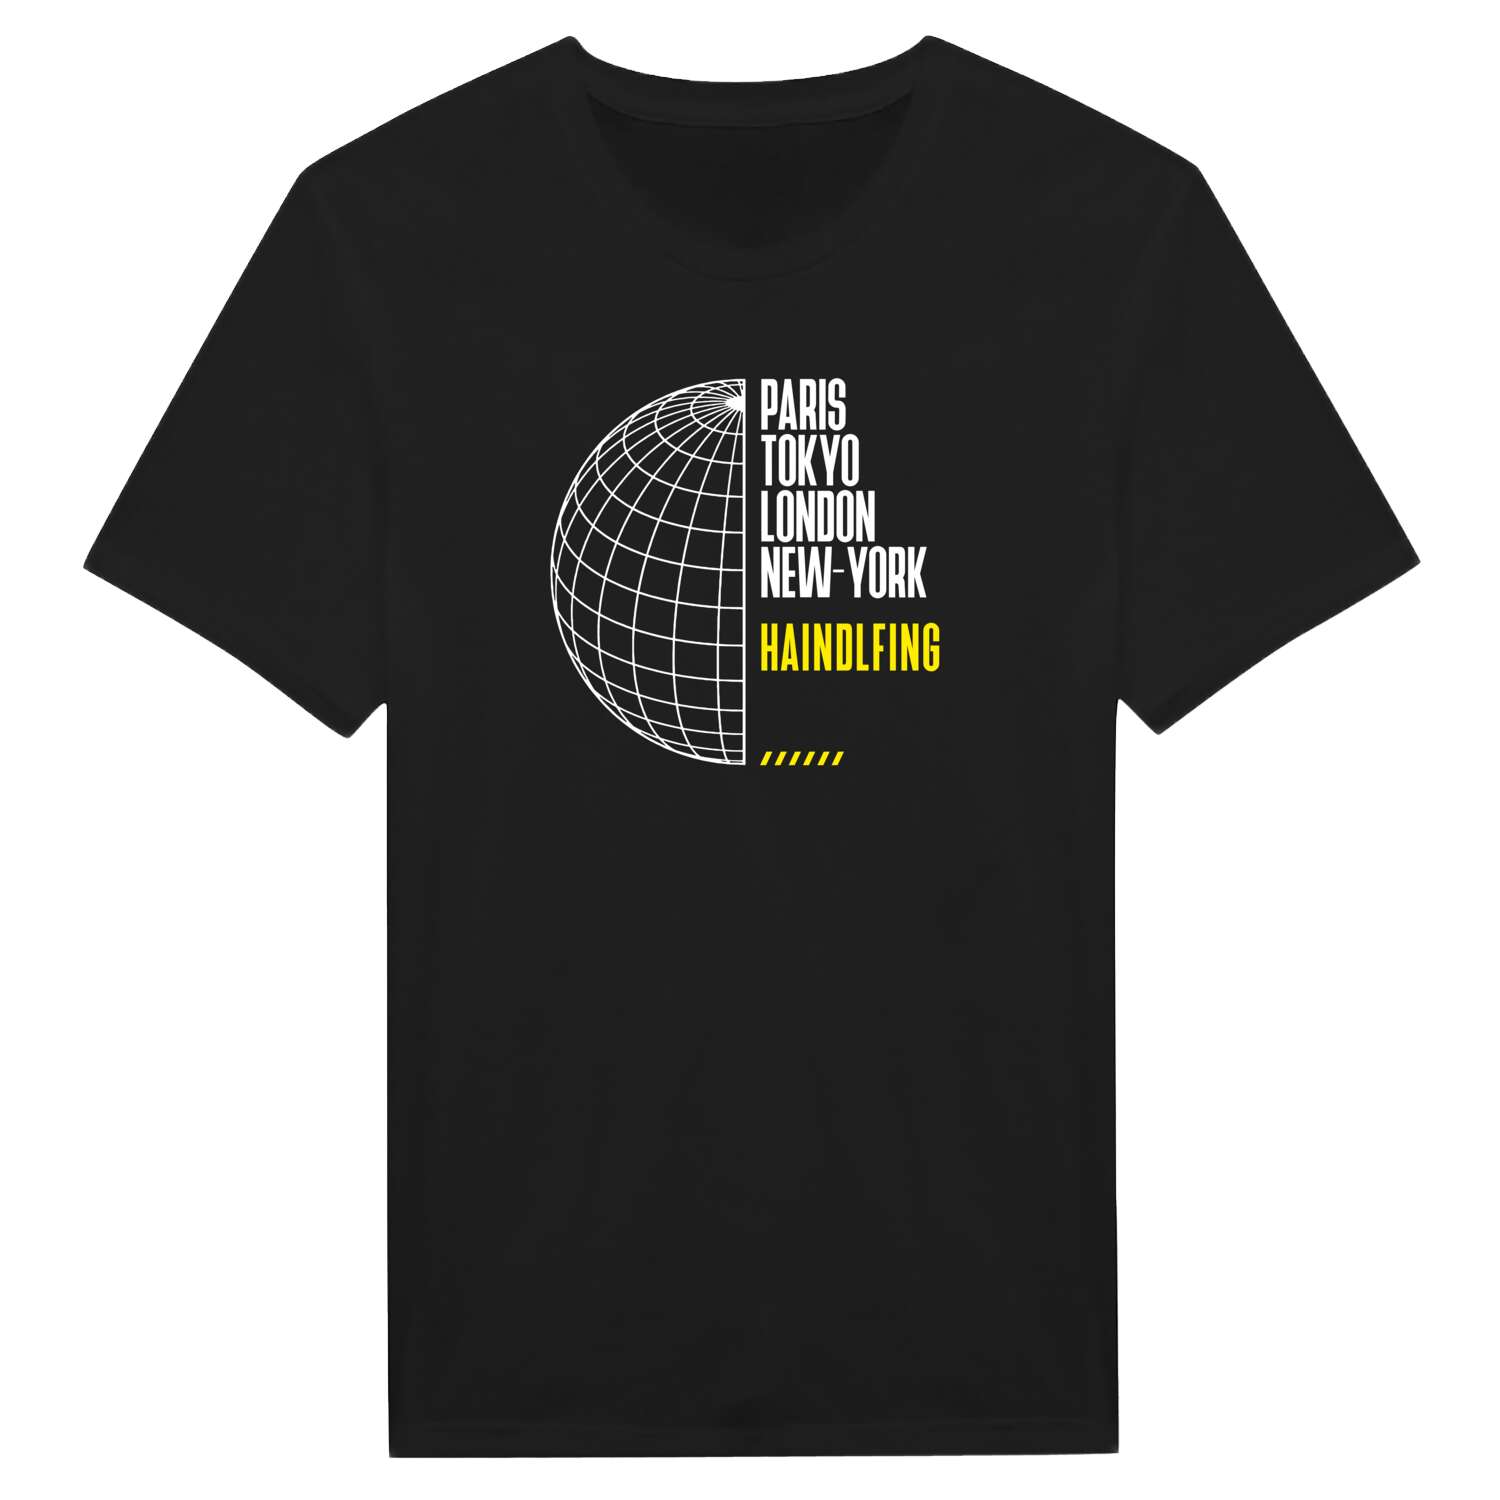 Haindlfing T-Shirt »Paris Tokyo London«